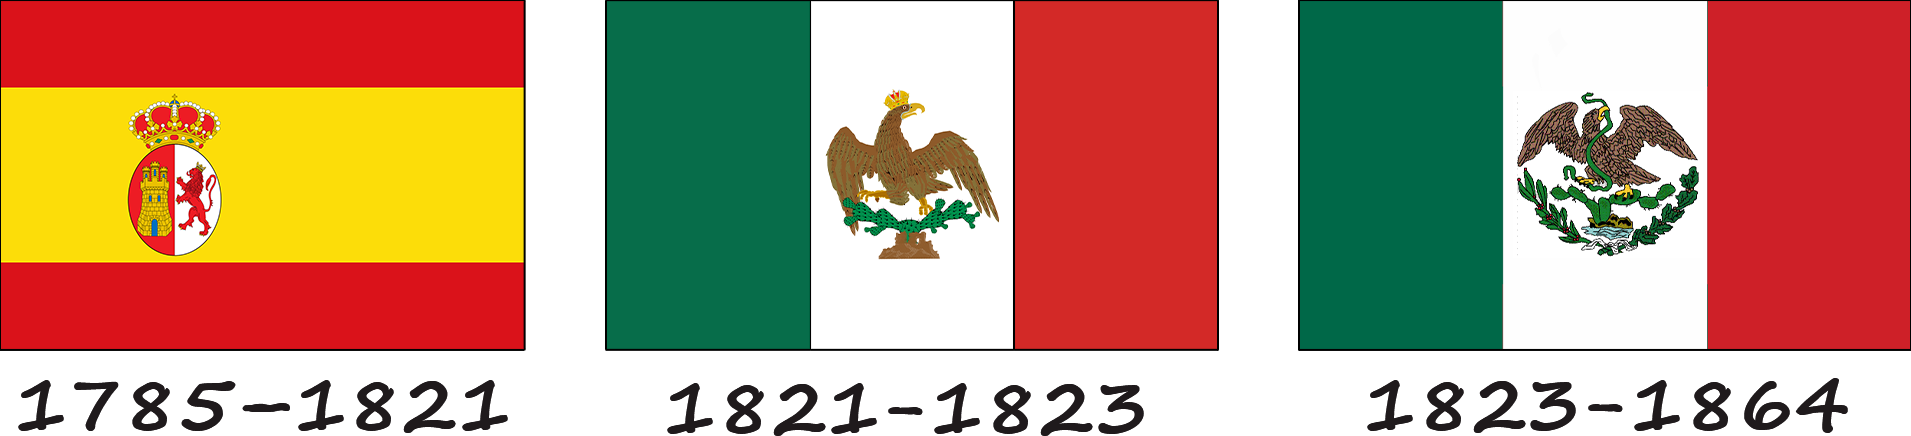 Історія прапору Мексики